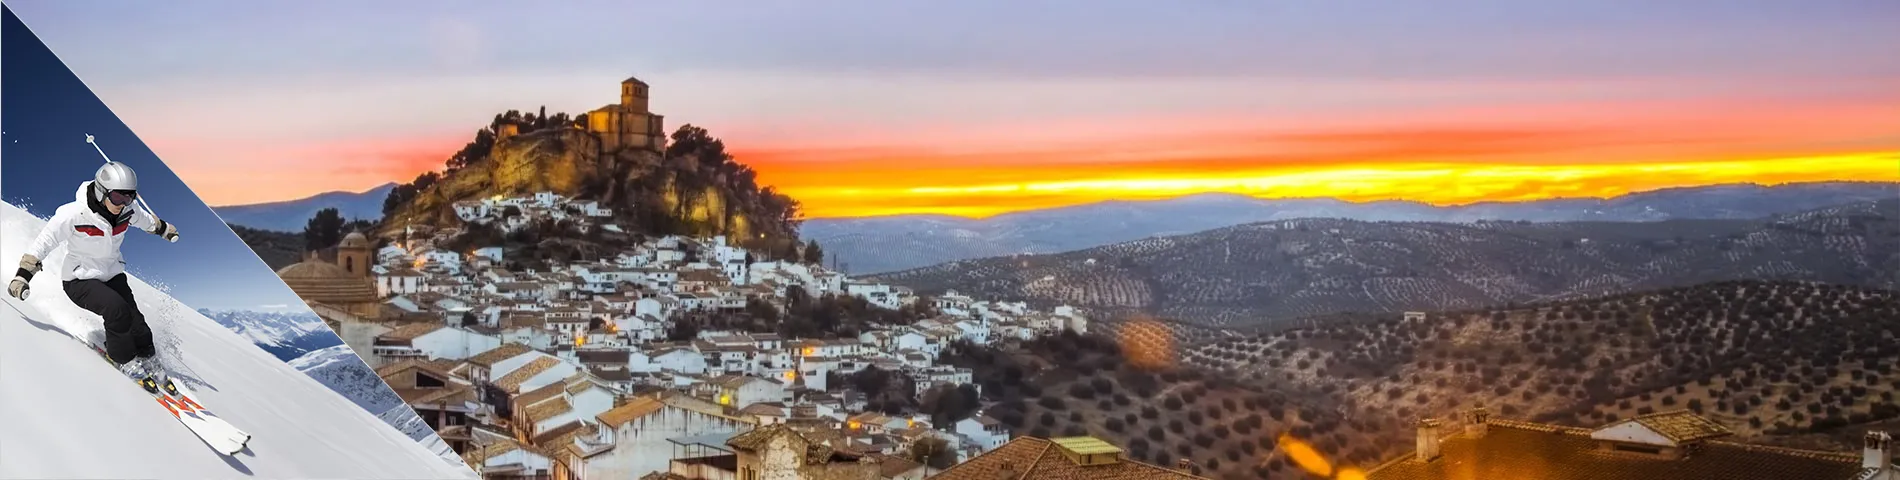 Granada - Spanska & skidåkning